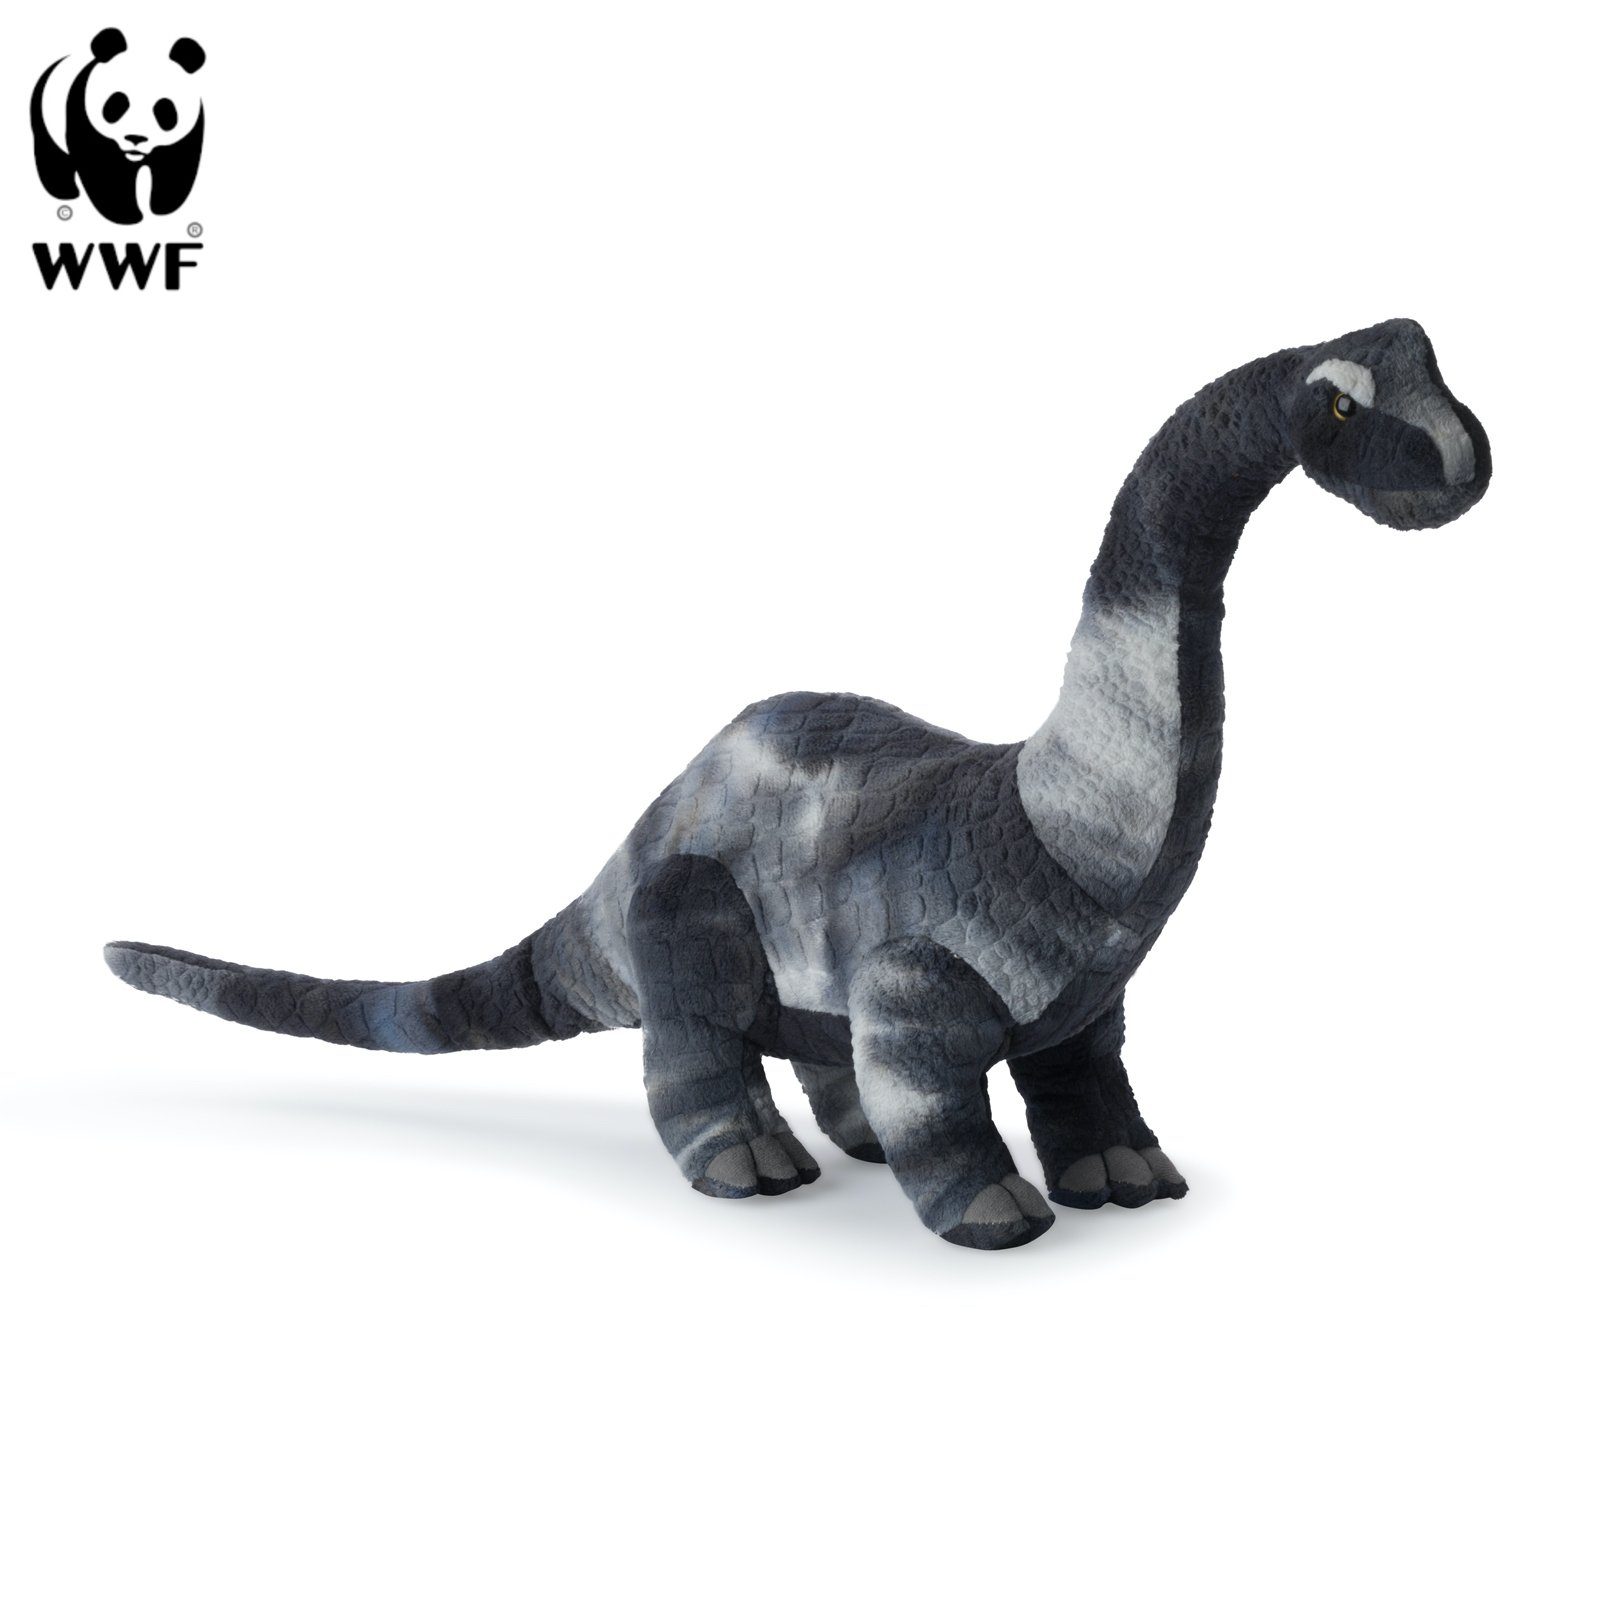 WWF Kuscheltier WWF Plüschtier Brachiosaurus (53cm)